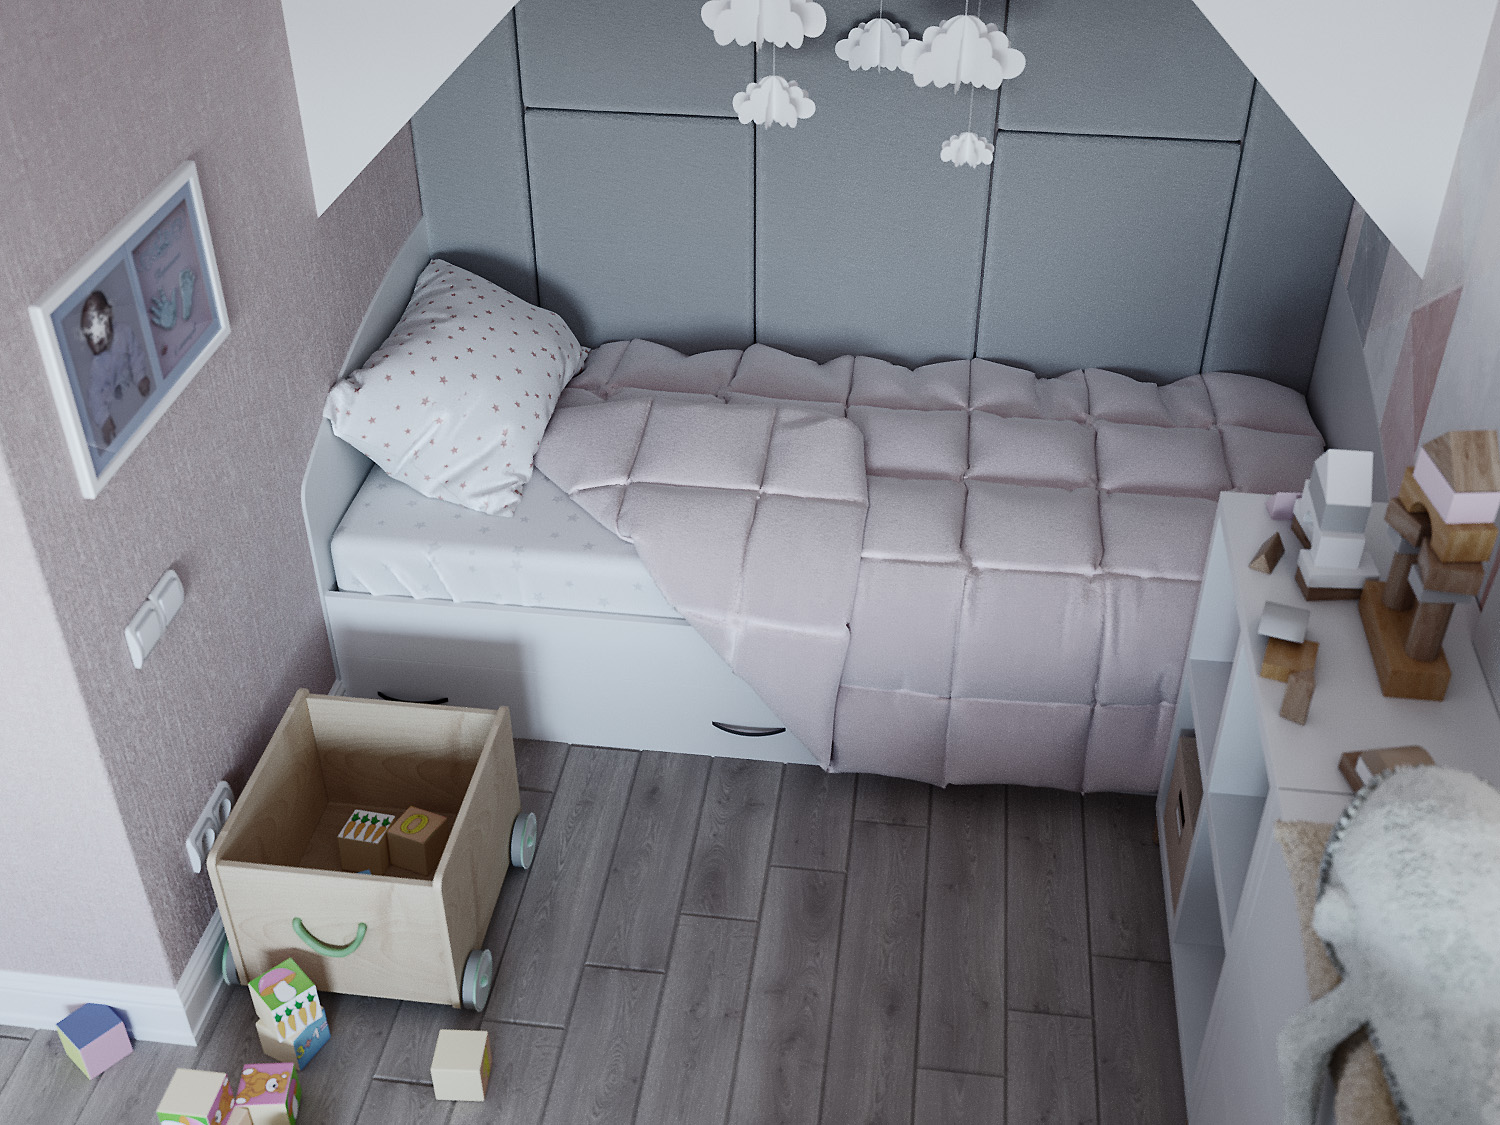 एक छोटी लड़की के लिए बच्चों का कमरा 3d max corona render में प्रस्तुत छवि